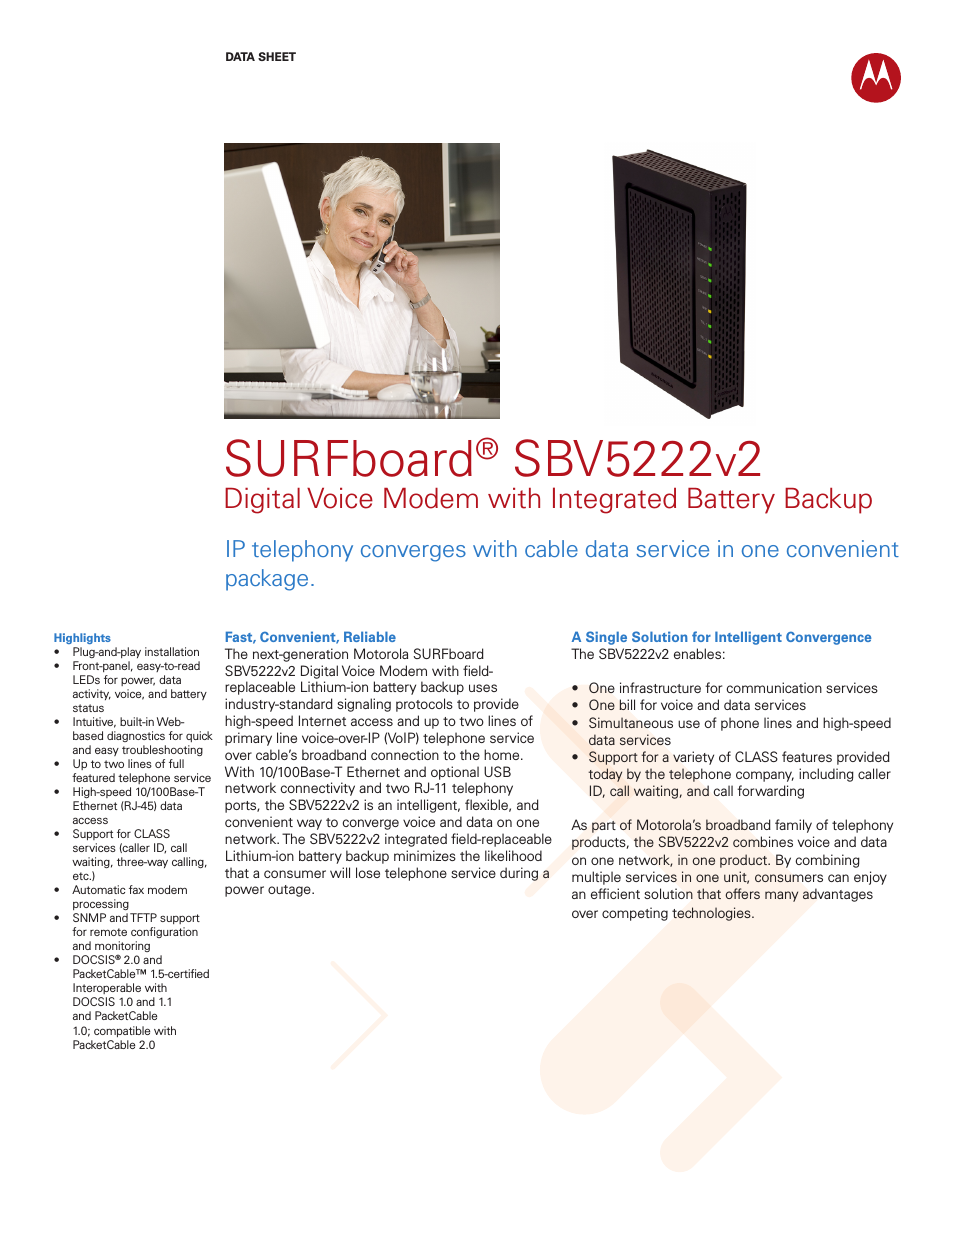 SURFboard SBV5222v2